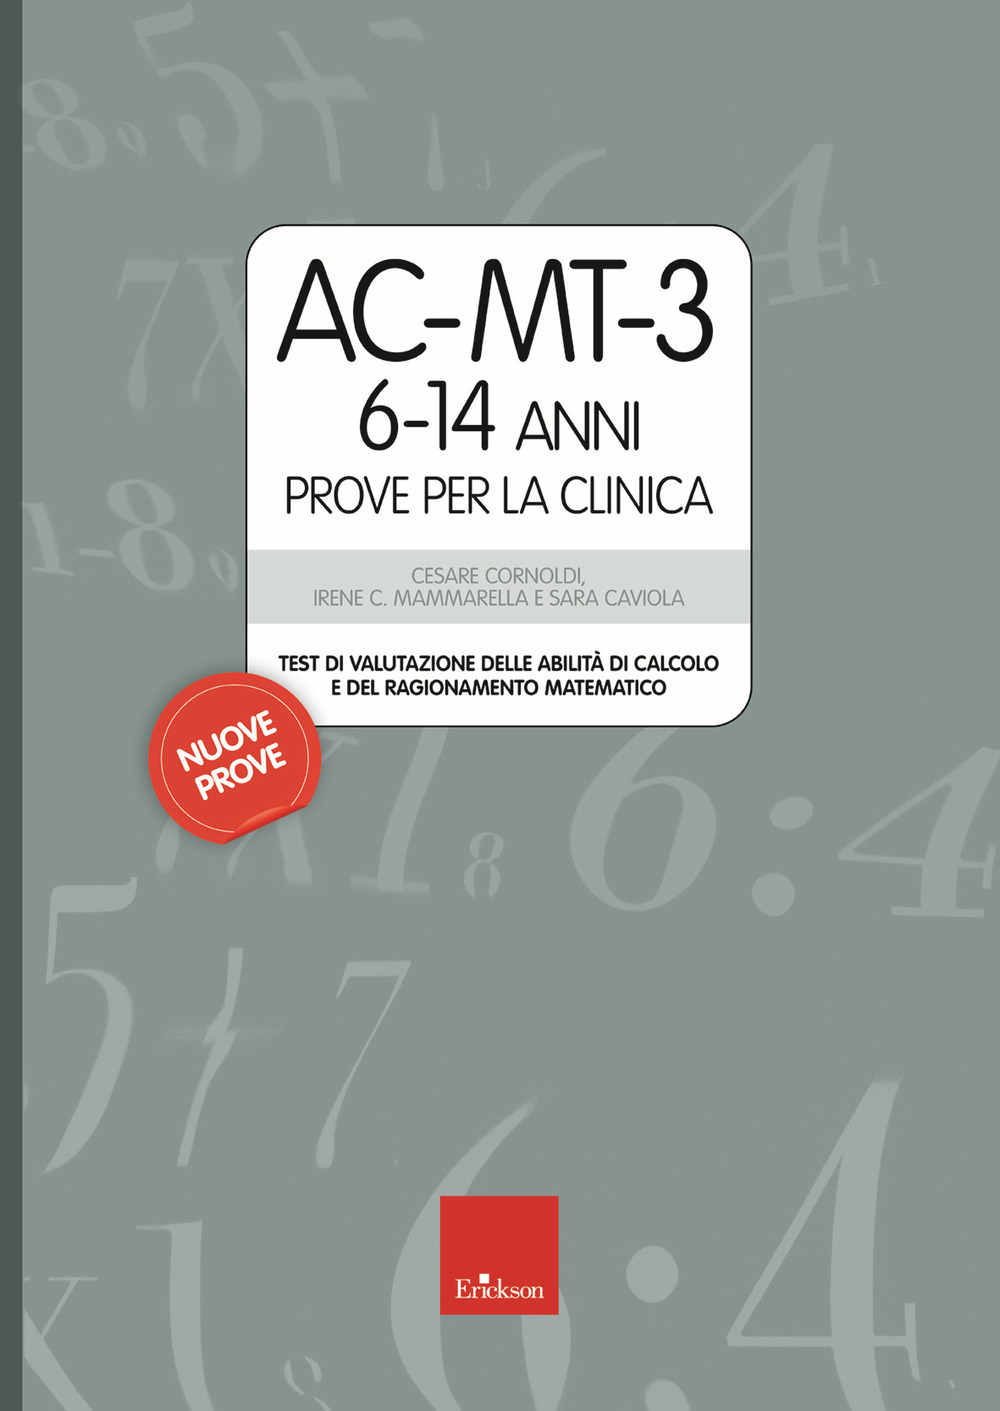 AC-MT-3 6-14 anni. Prove per la clinica